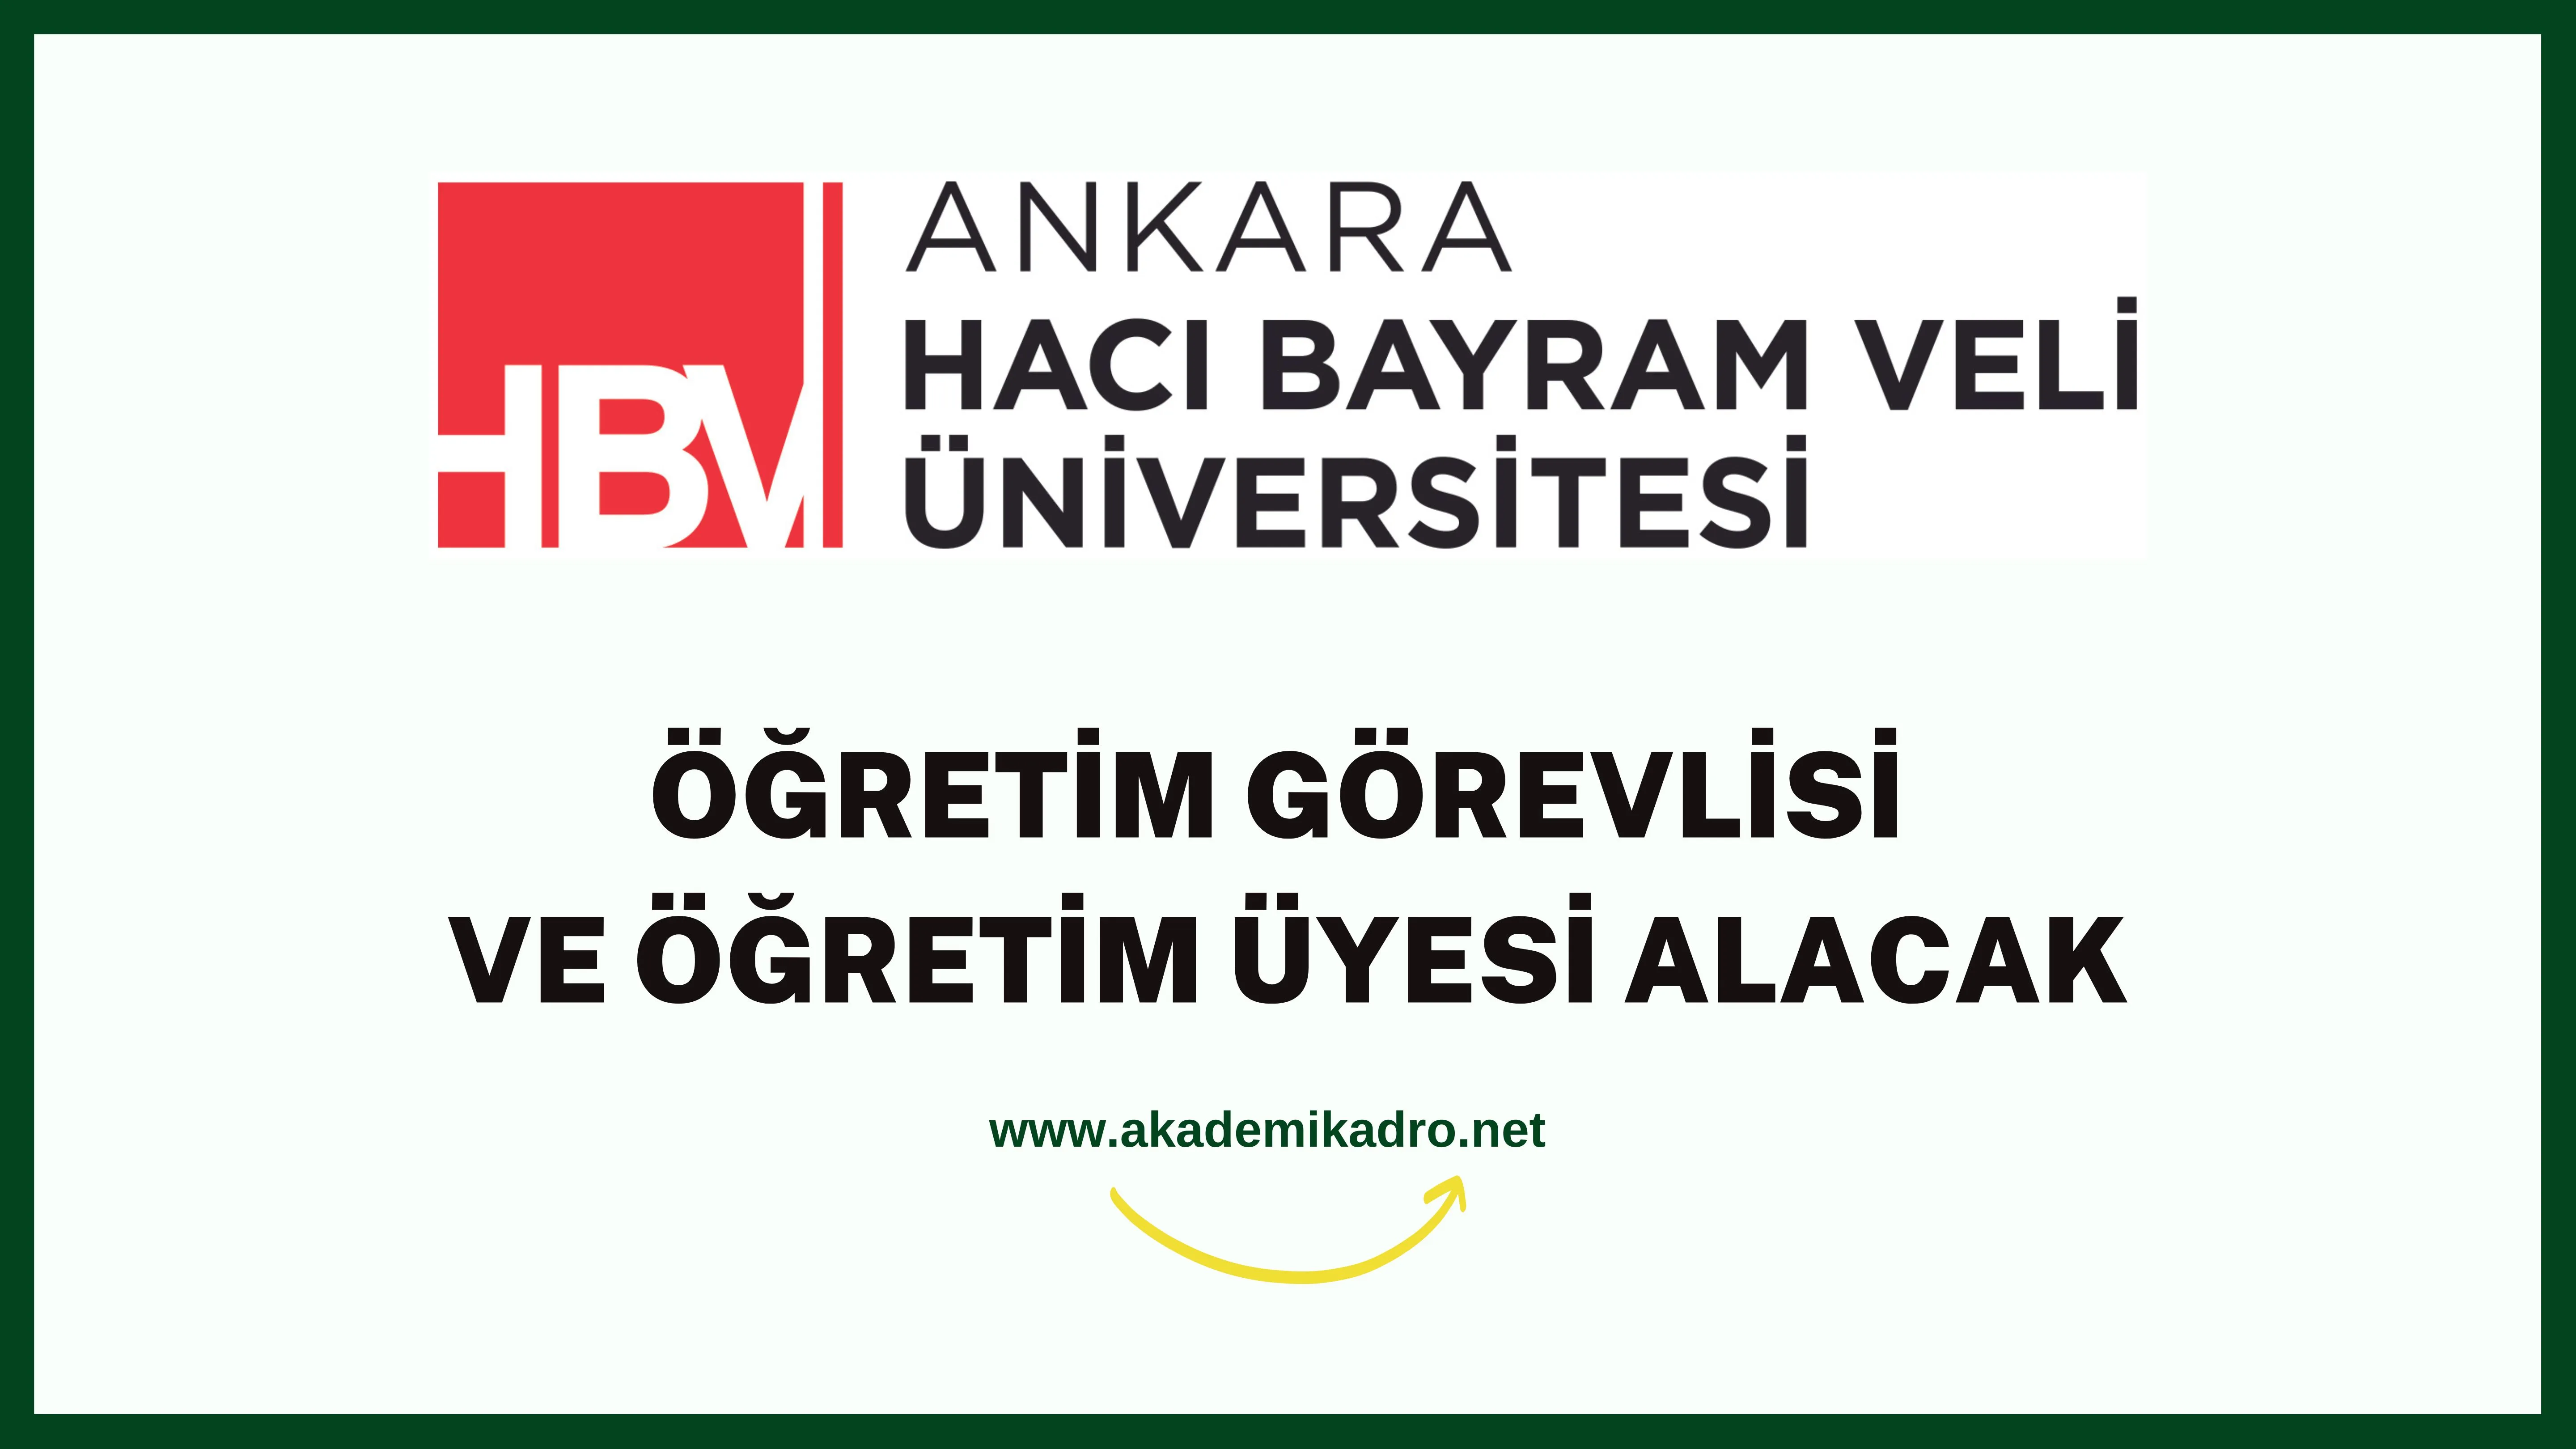 Ankara Hacı Bayram Veli Üniversitesi 2 Öğretim görevlisi ve birçok alandan 32 Öğretim üyesi alacak. Son başvuru tarihi 05 Eylül 2022.